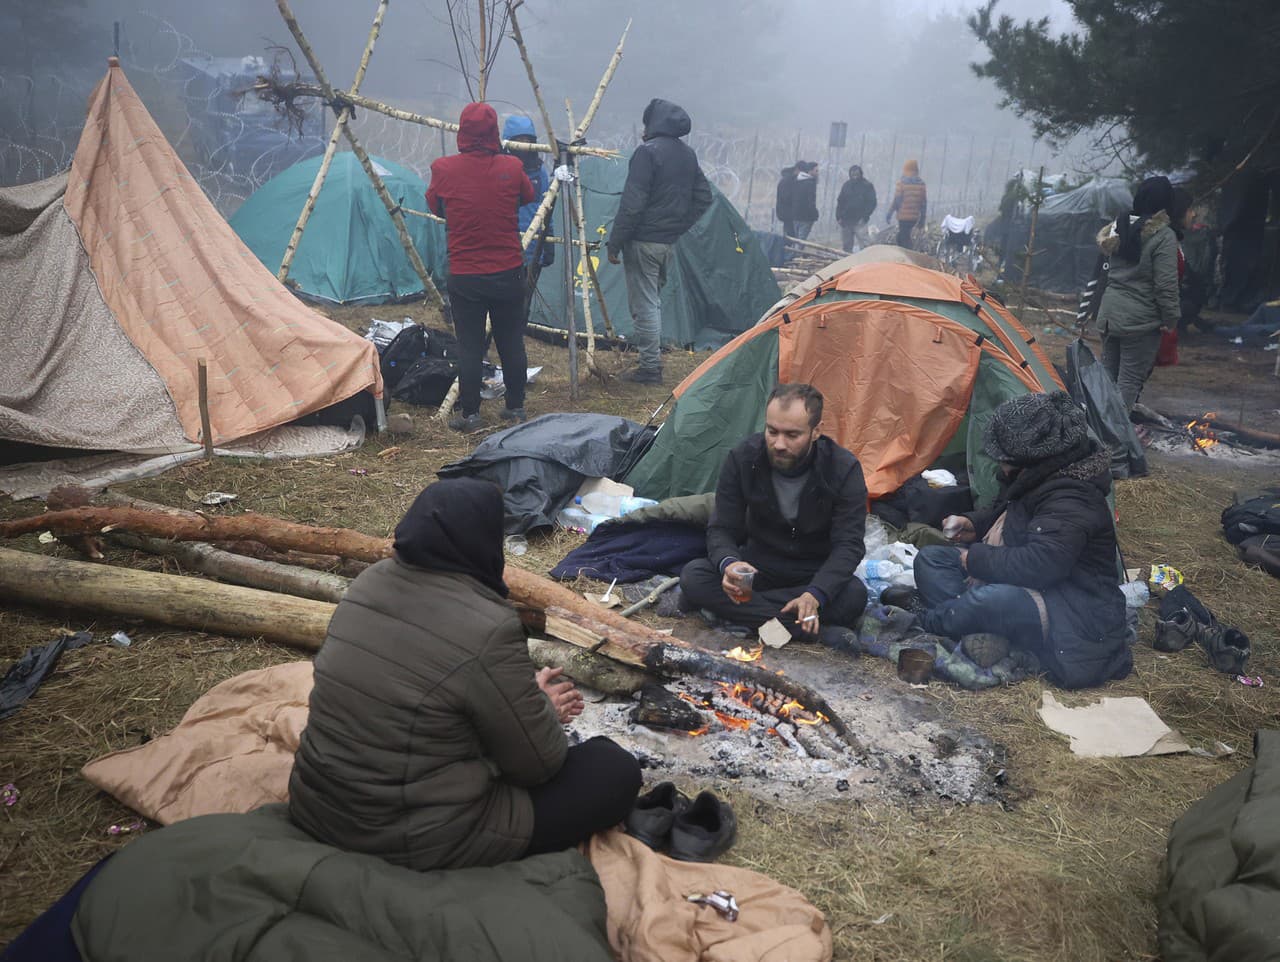 V pohraničných oblastiach táboria tisíce migrantov z Blízkeho východu, ktorých priviedol k hranici bieloruský režim